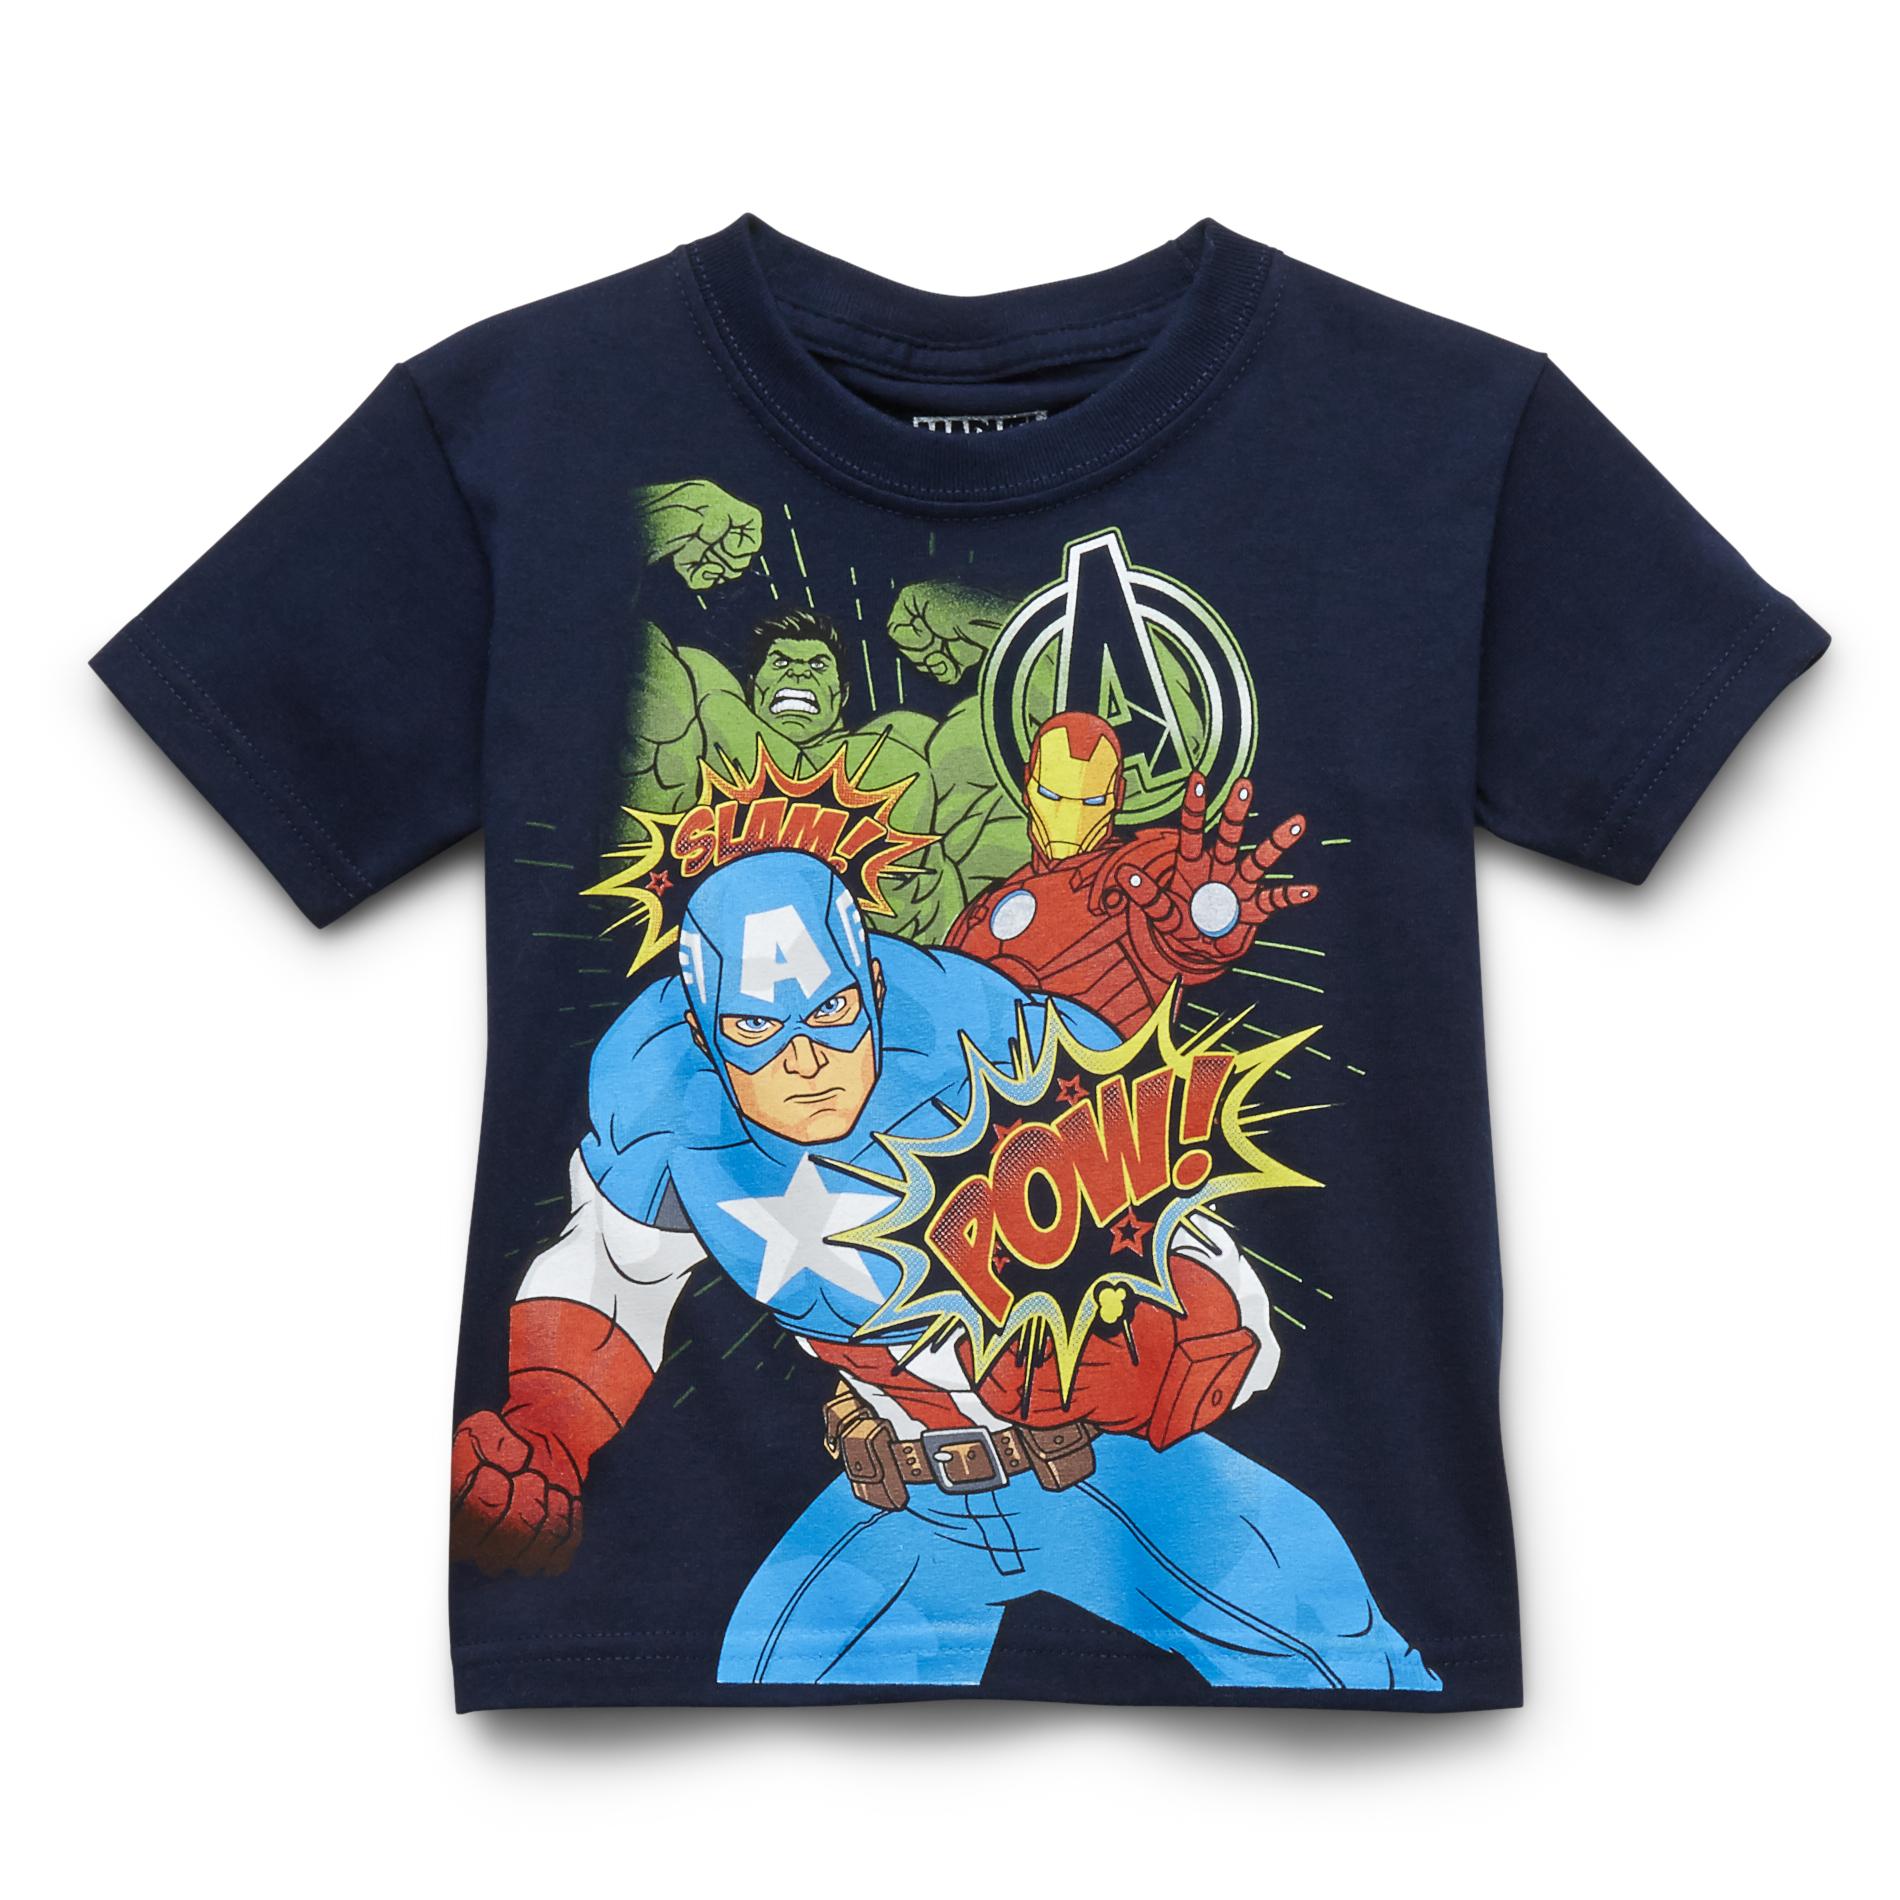 Marvel Toddler Boy's Graphic T-Shirt - Avengers